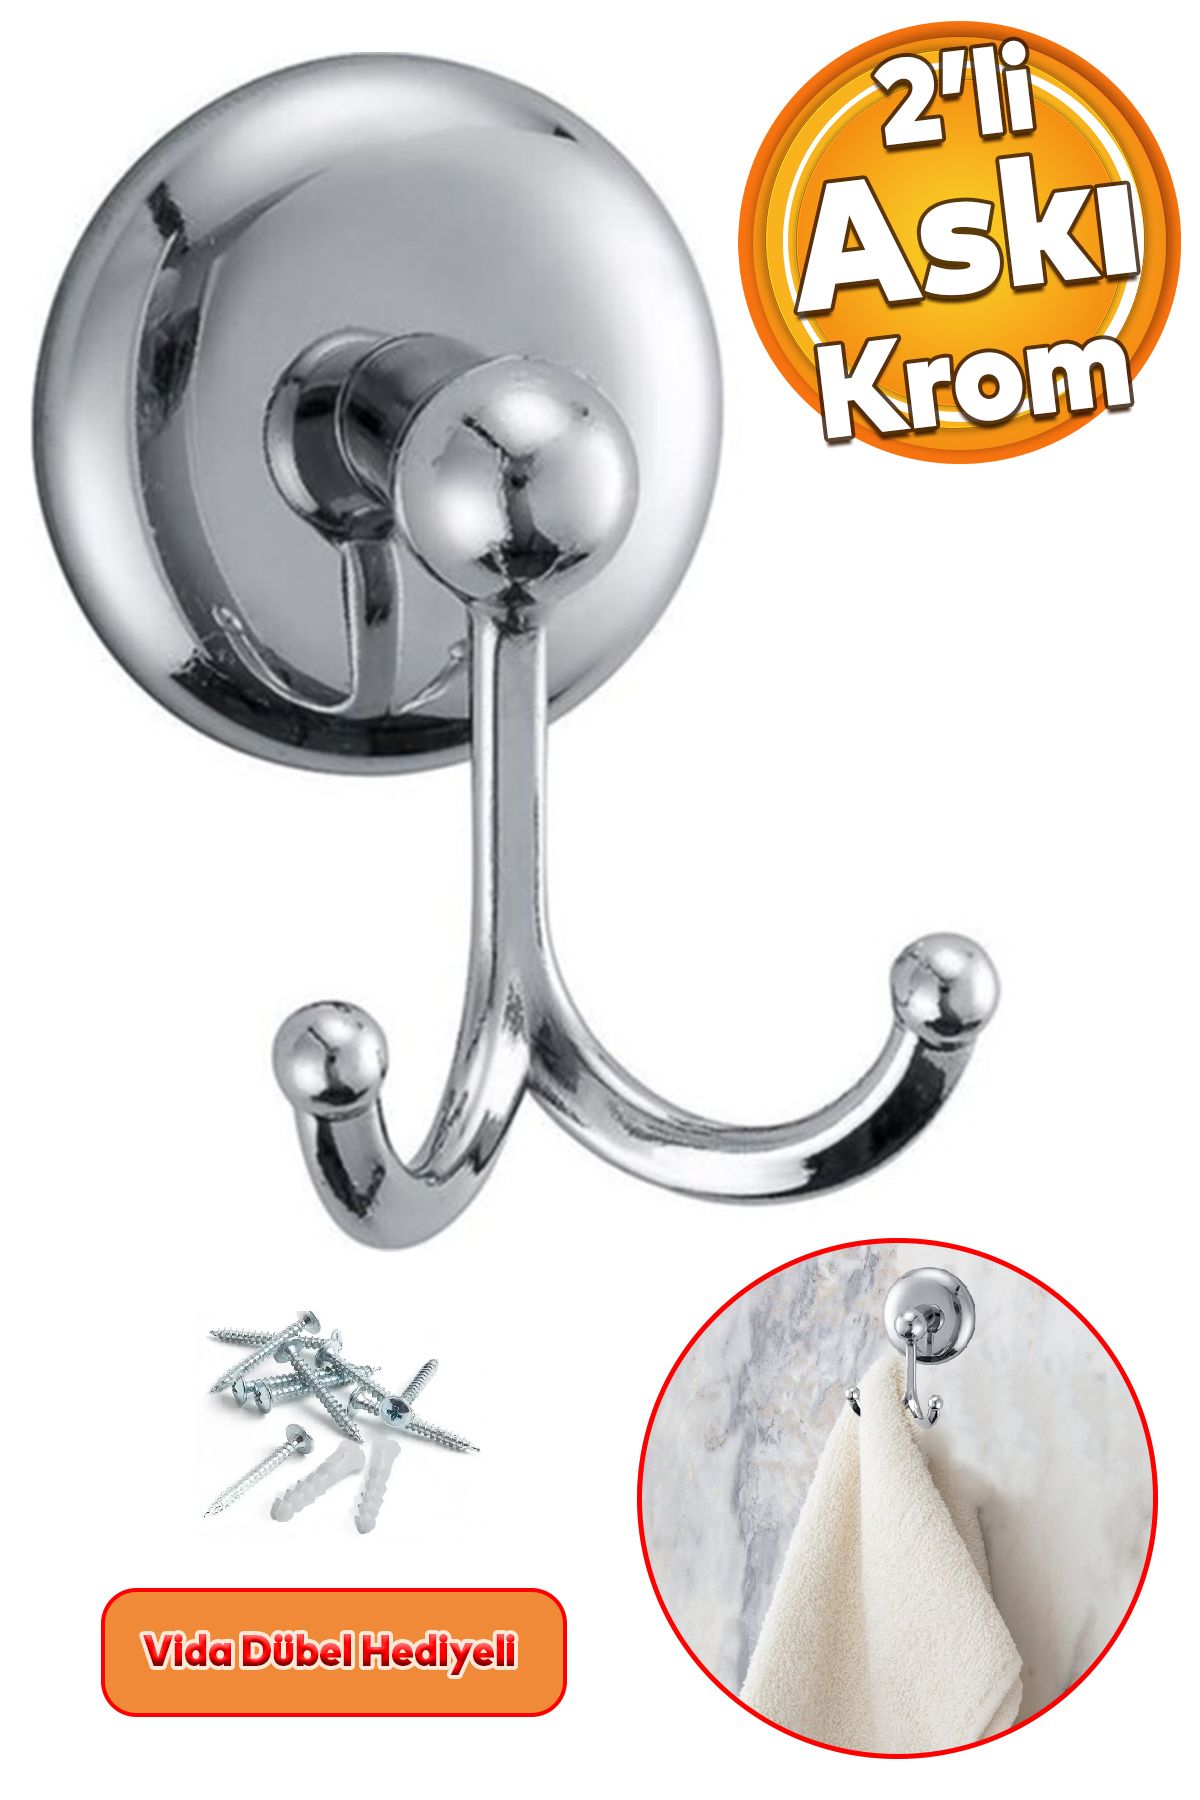 Badem10 Vidalı Askılık Banyo Tuvalet Lavabo Havlu Bornoz Askısı Çatal İkili Metal Askı Krom